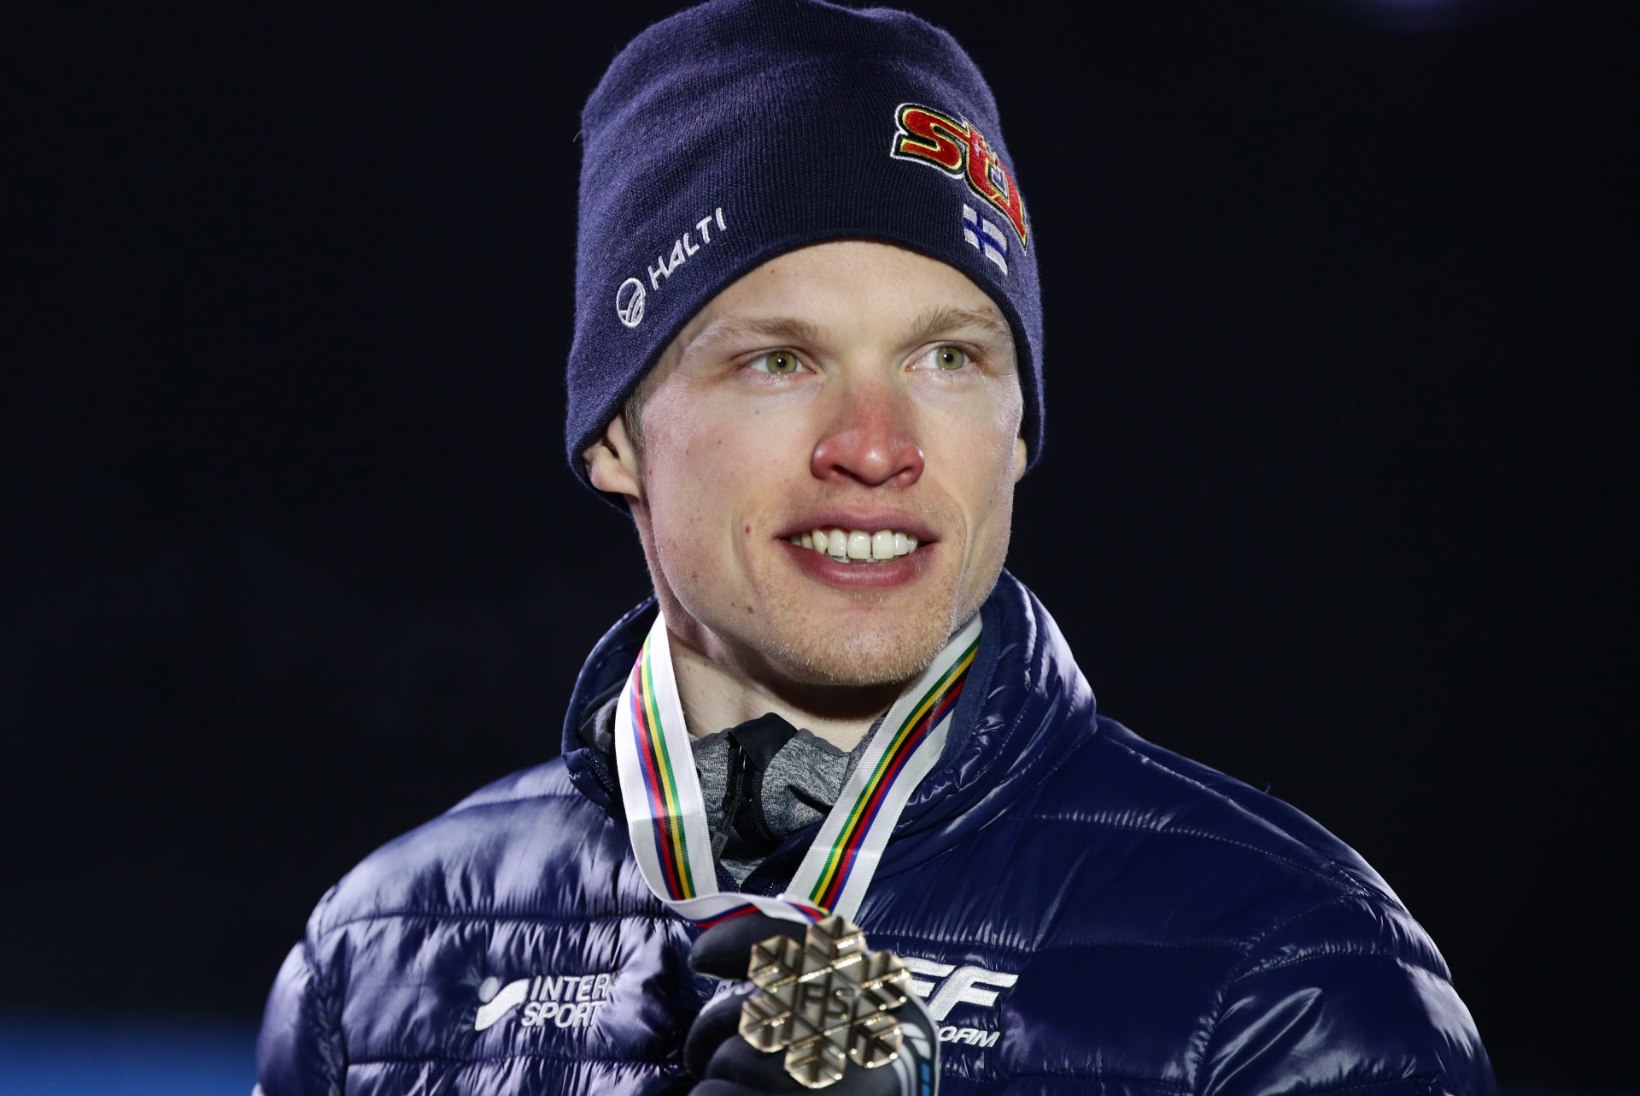 IMELIK: Soome suusaäss teenis olümpiavõitjana kaks korda vähem kui maailmameistrina